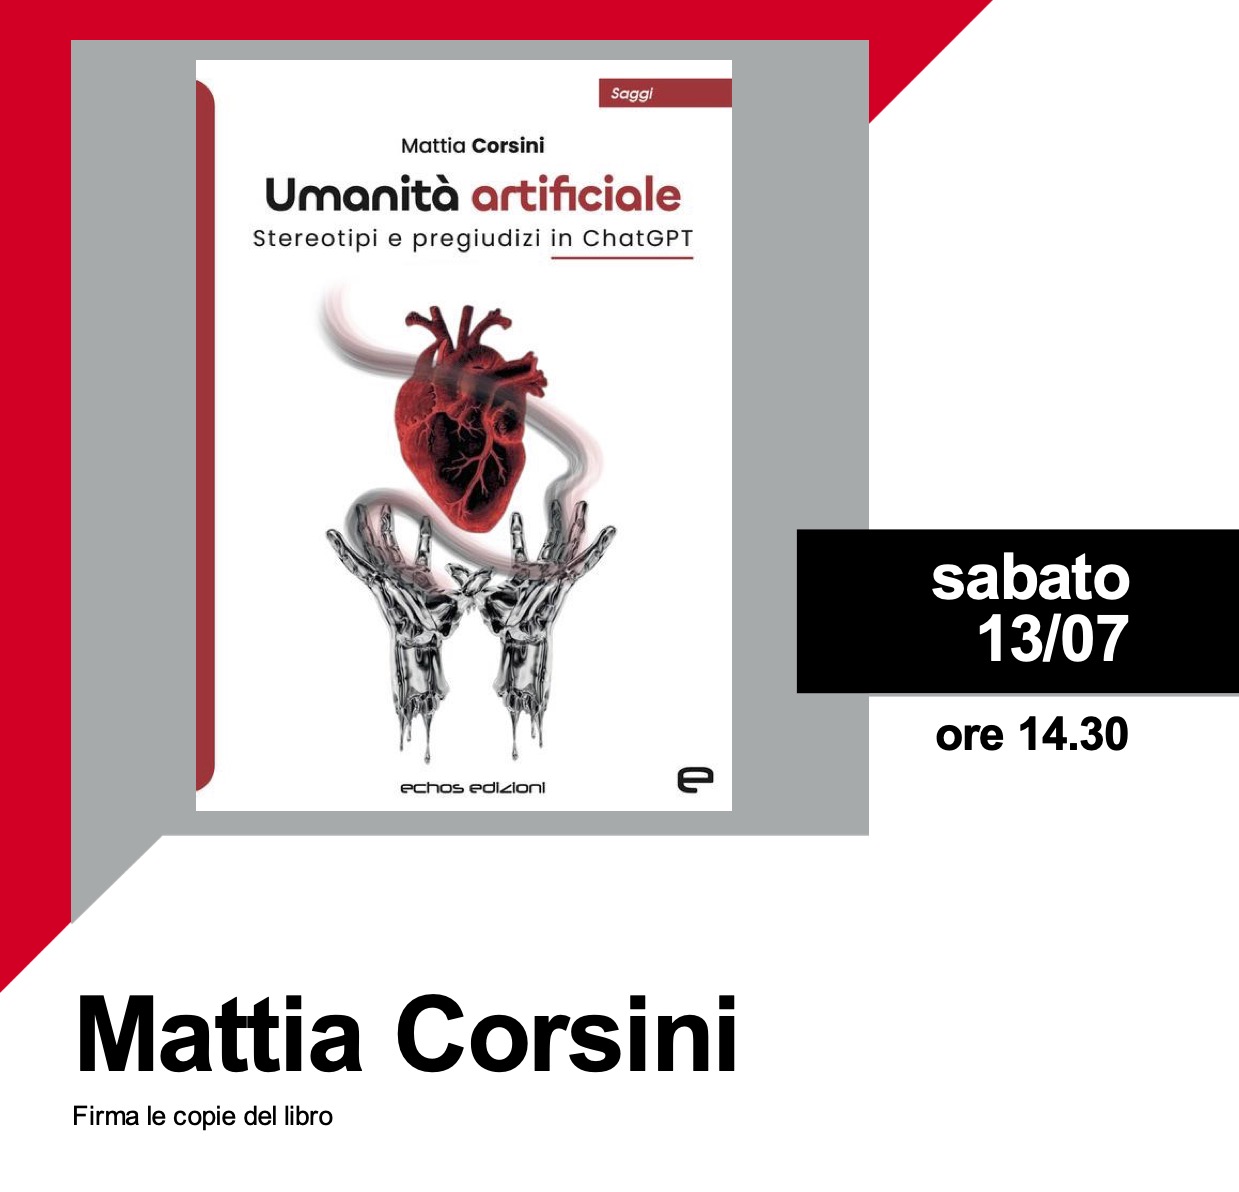 Firmacopie con Mattia Corsini